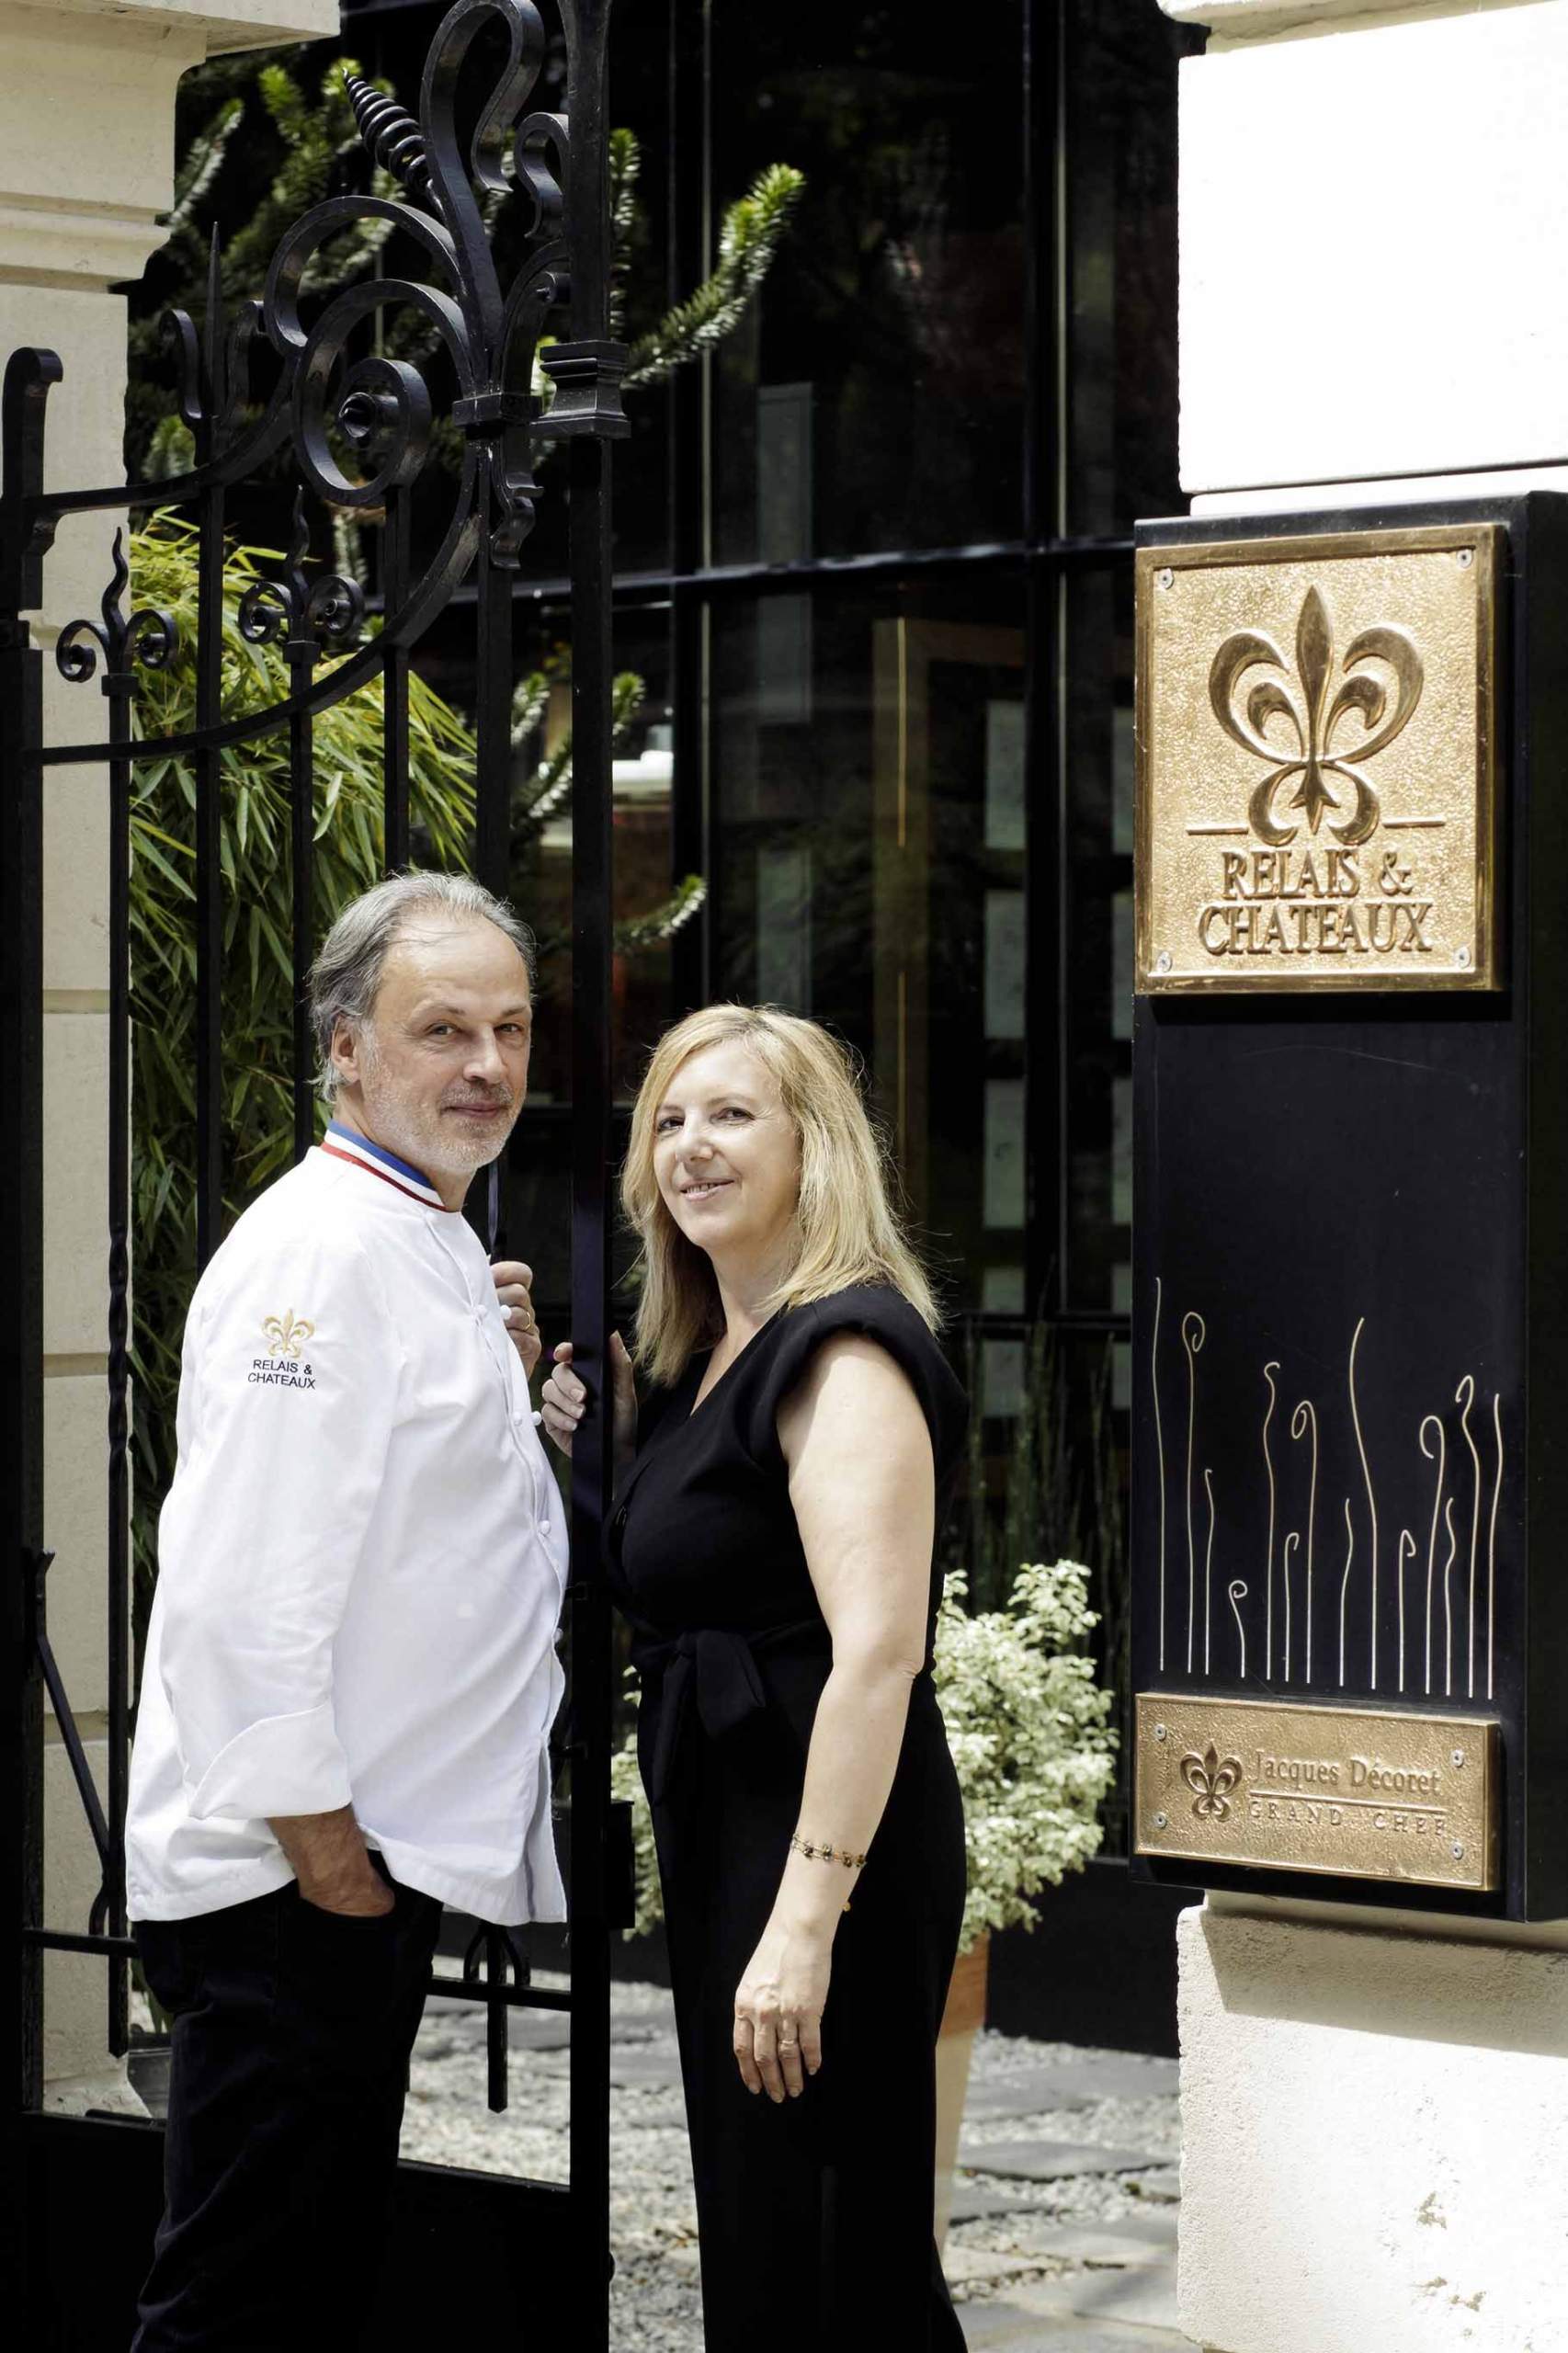 Jacques et Martine Decoret, Maison Decoret, Hotel Restaurant Vichy